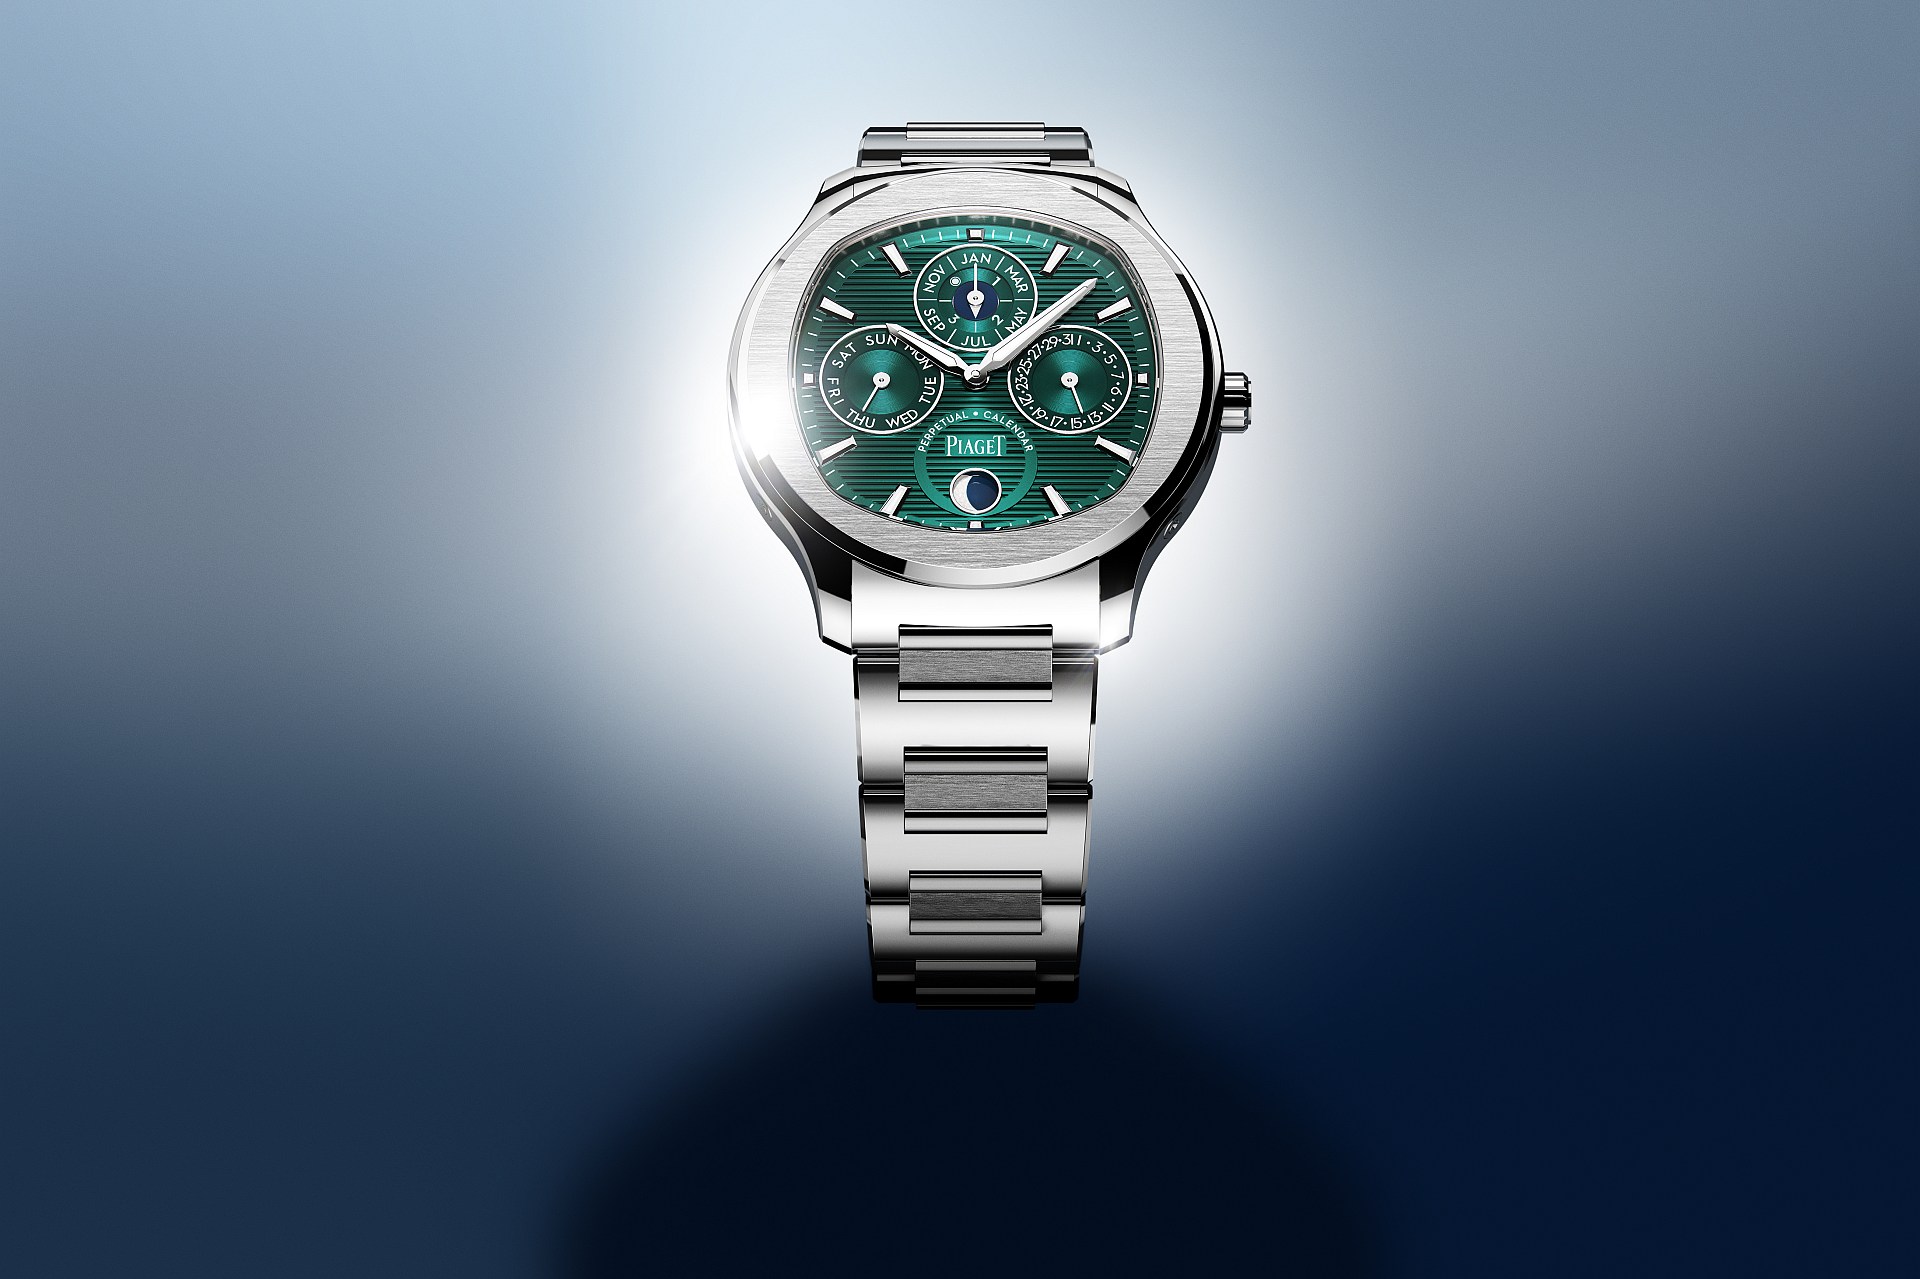 無須言喻的低調奢華：伯爵Polo系列礦石綠超薄萬年曆自動腕錶